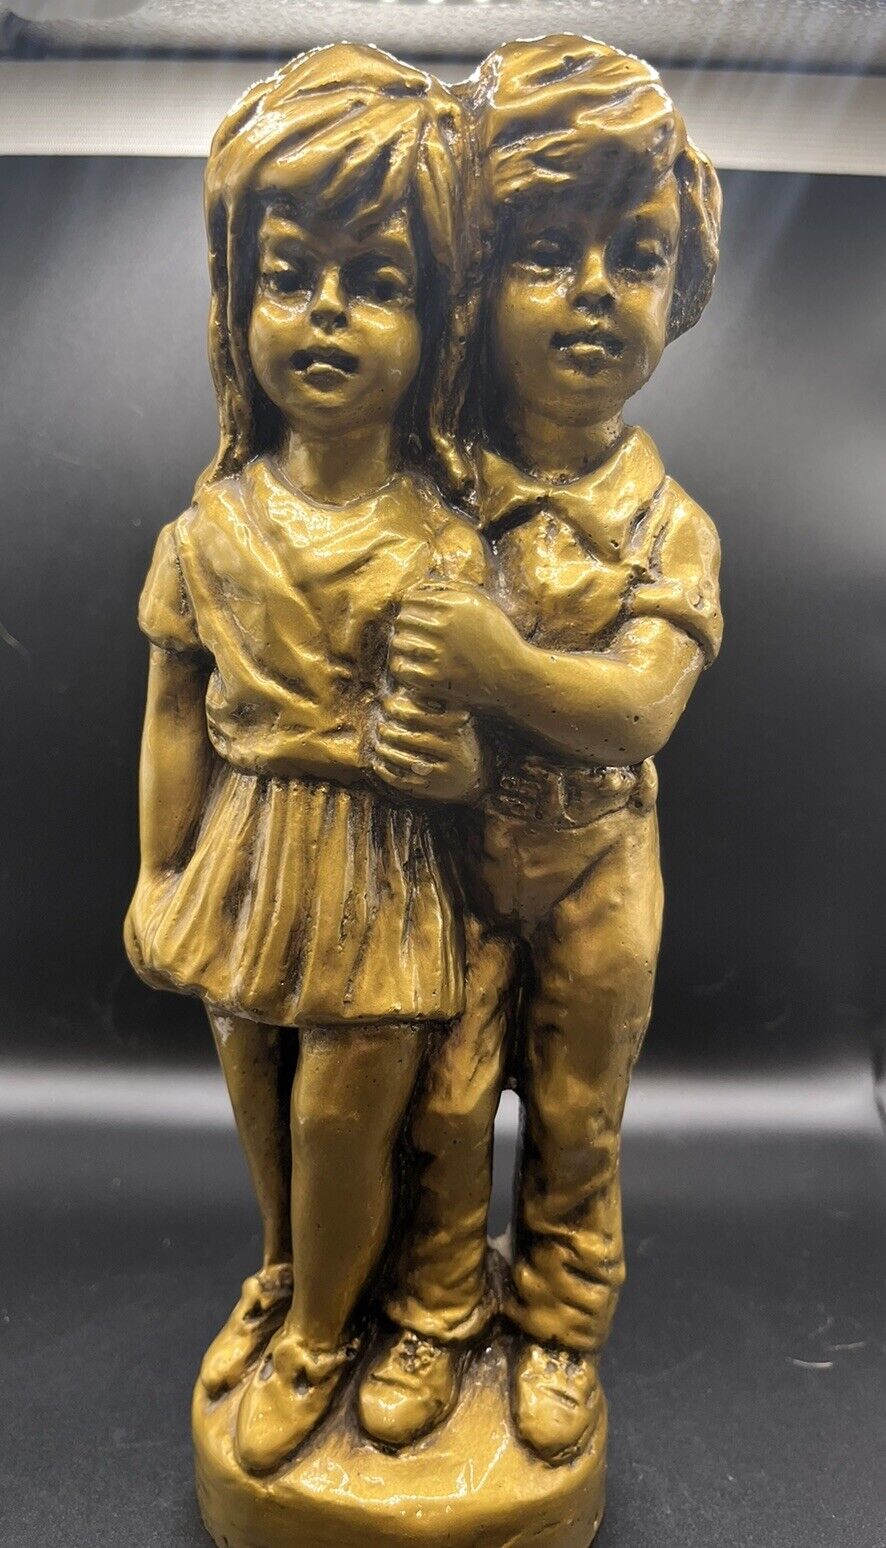 Creators Inc Vintage 1974 Man and Woman Figurine